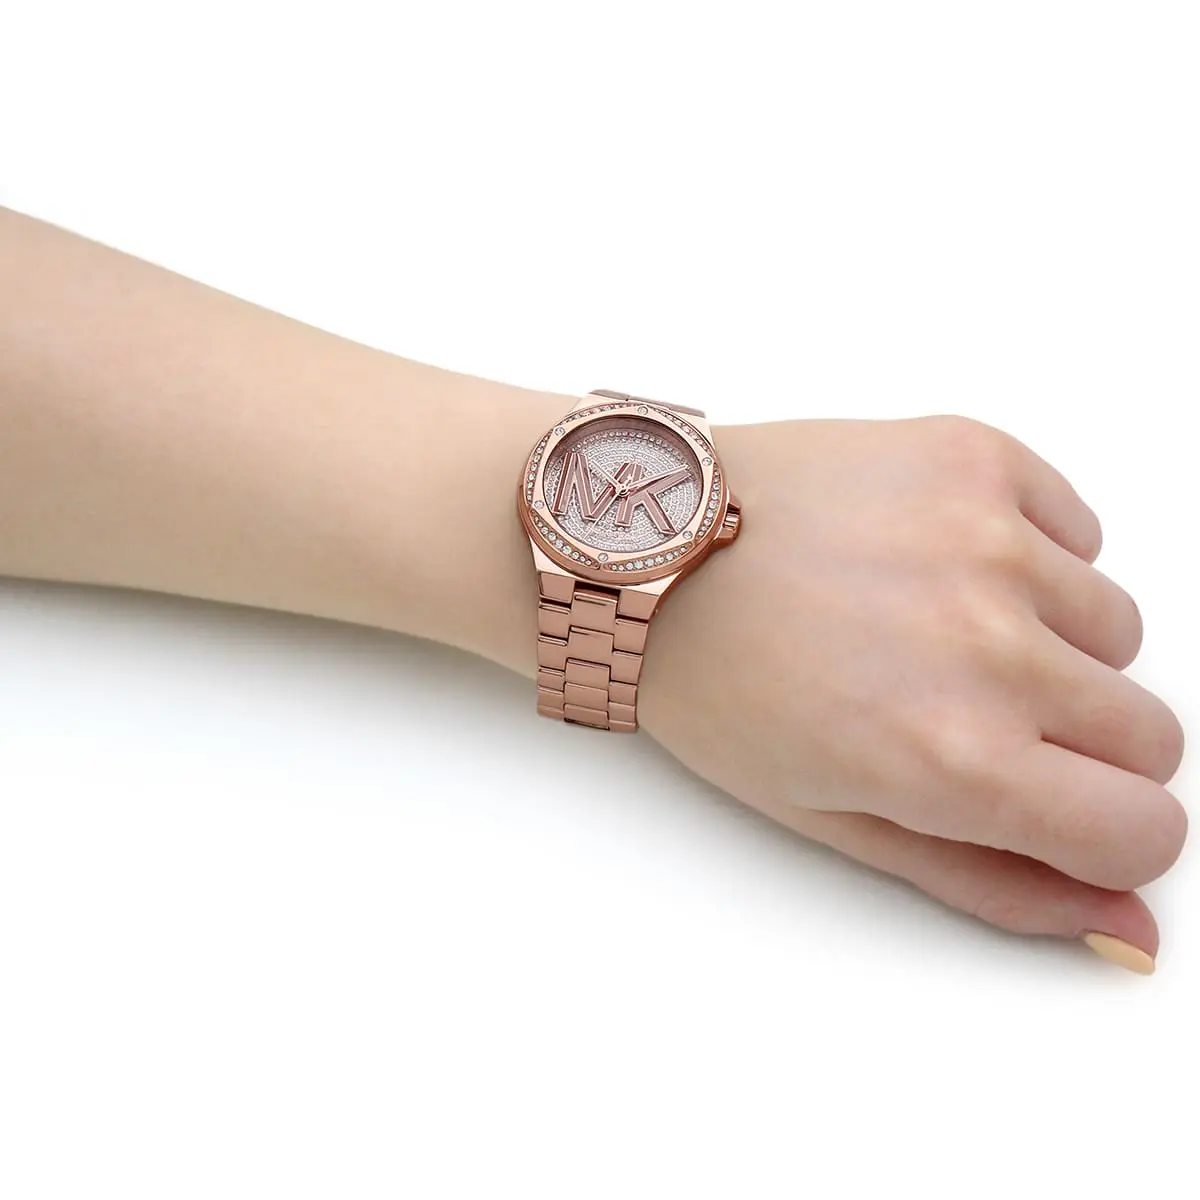 Michael Kors Women's Mini-Lennox Quartz Analog Gold Stainless Steel  Bracelet Watch